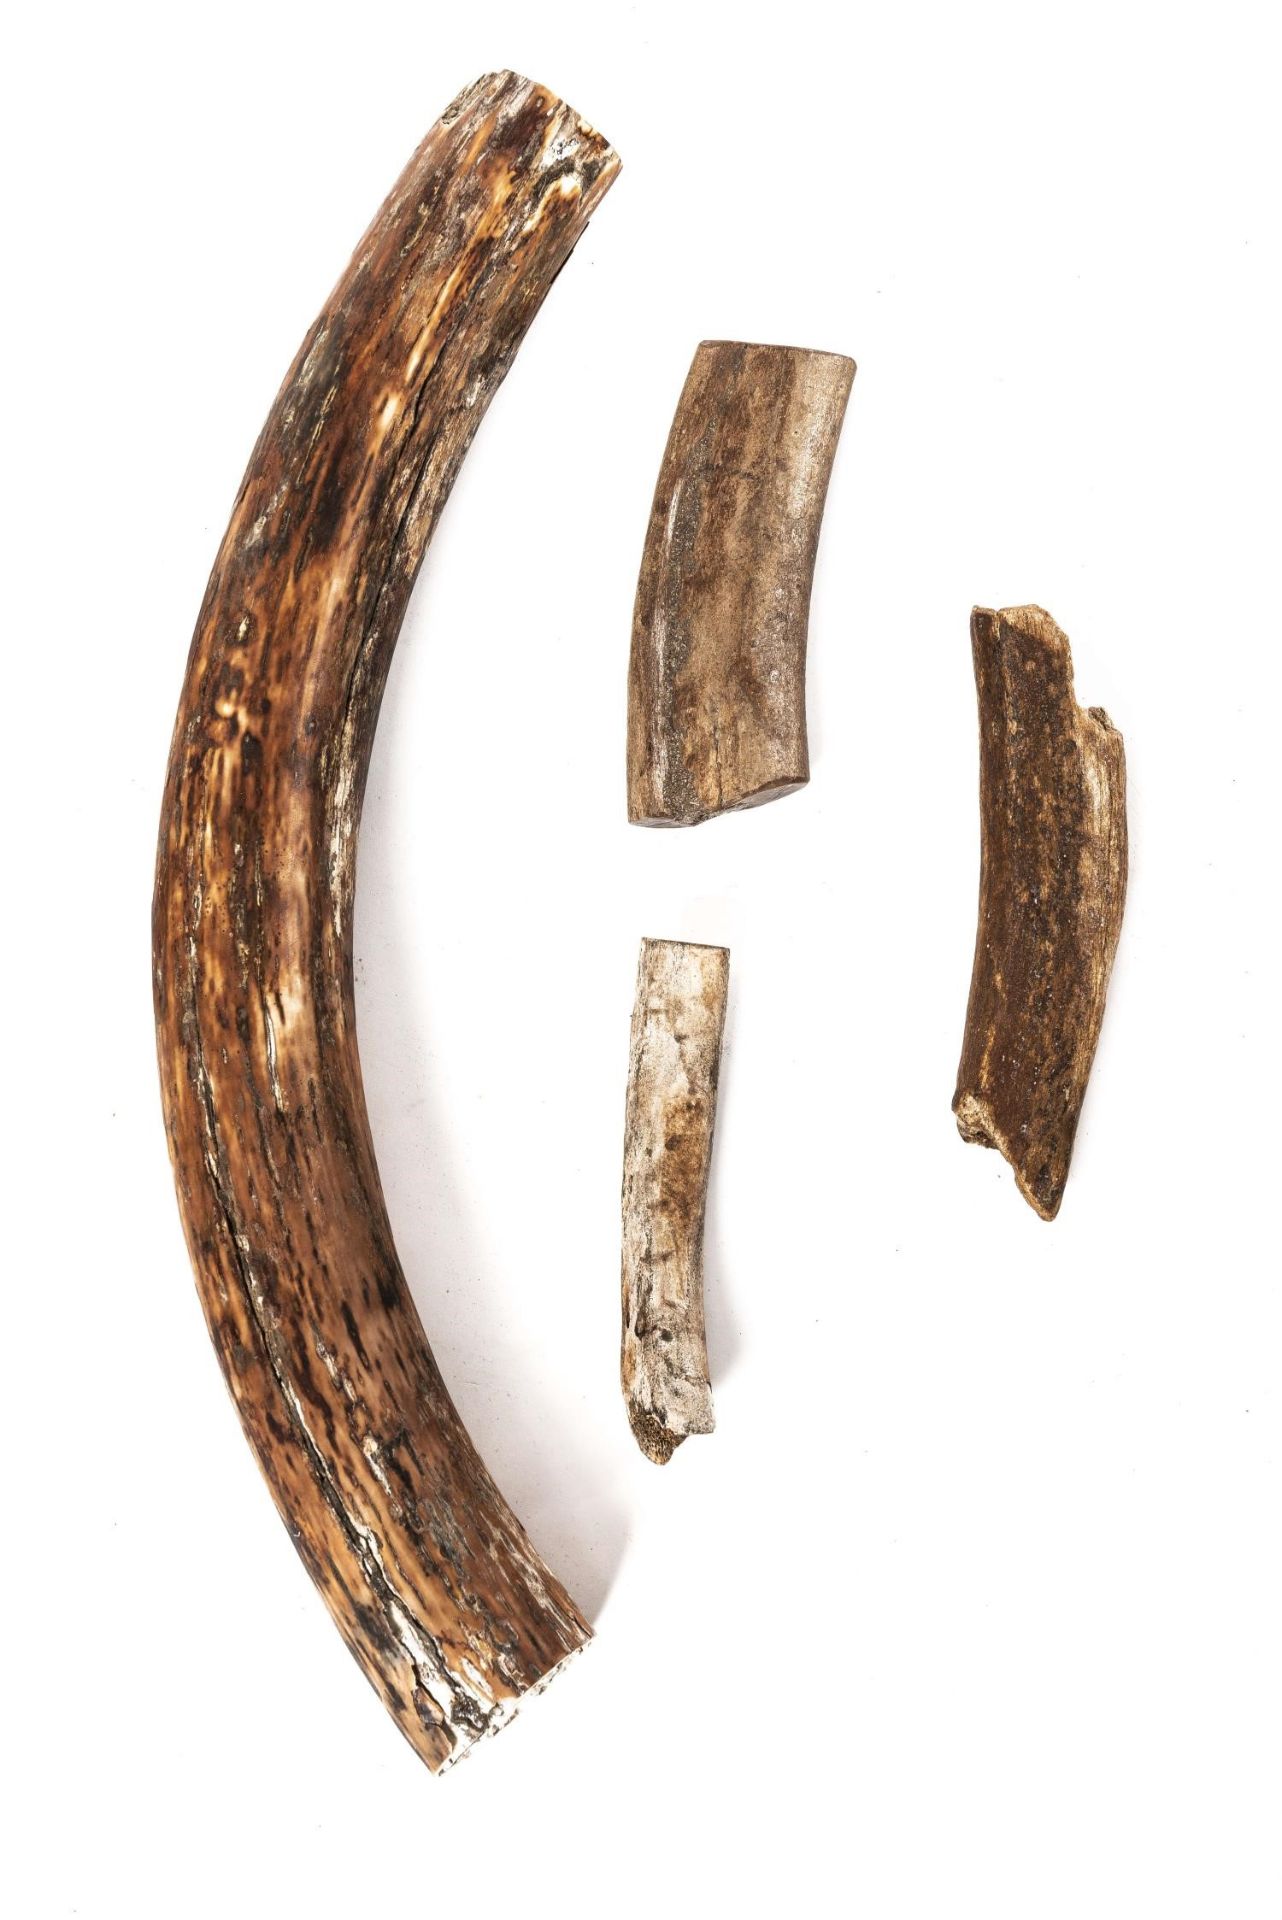 Fossile de défense de mammouth laineux- Mammuthus primigenius 67 cm et 3 fossiles [...]